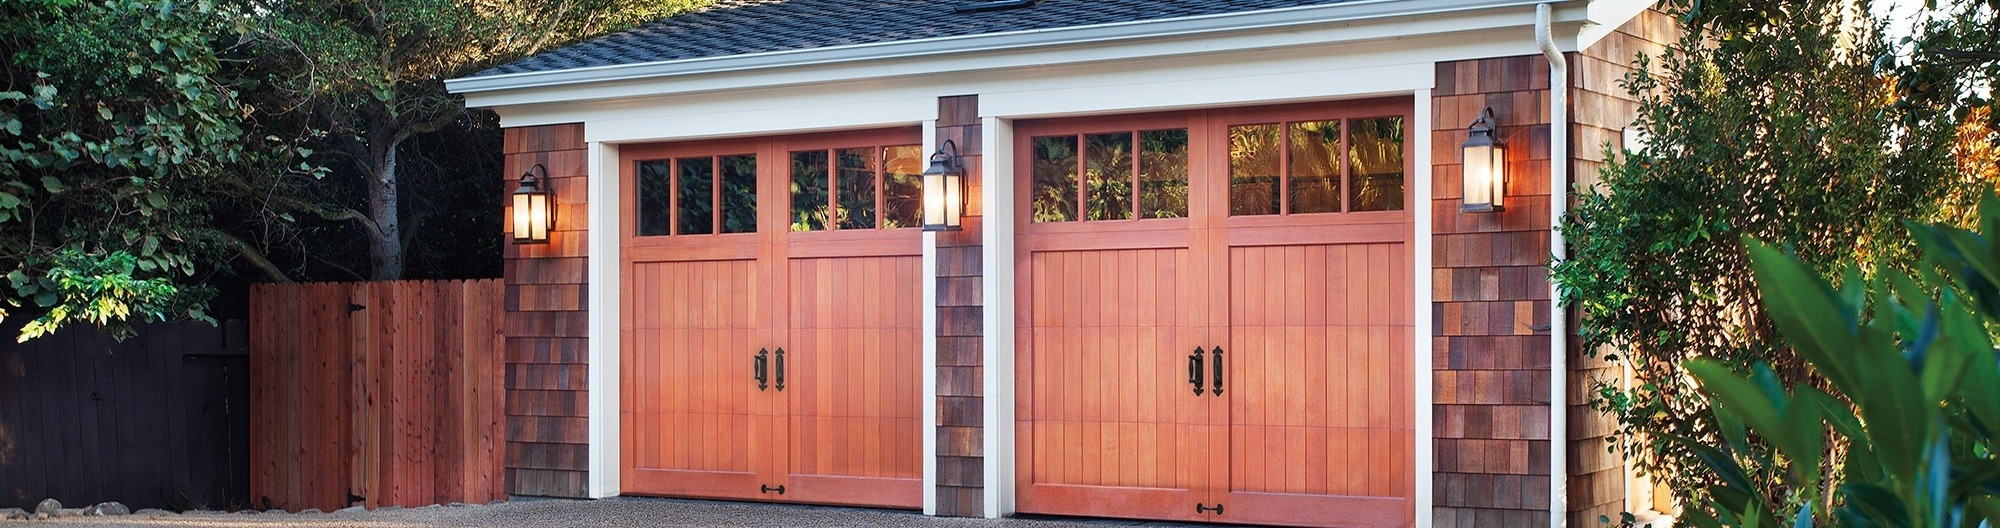 reserve wood garage door